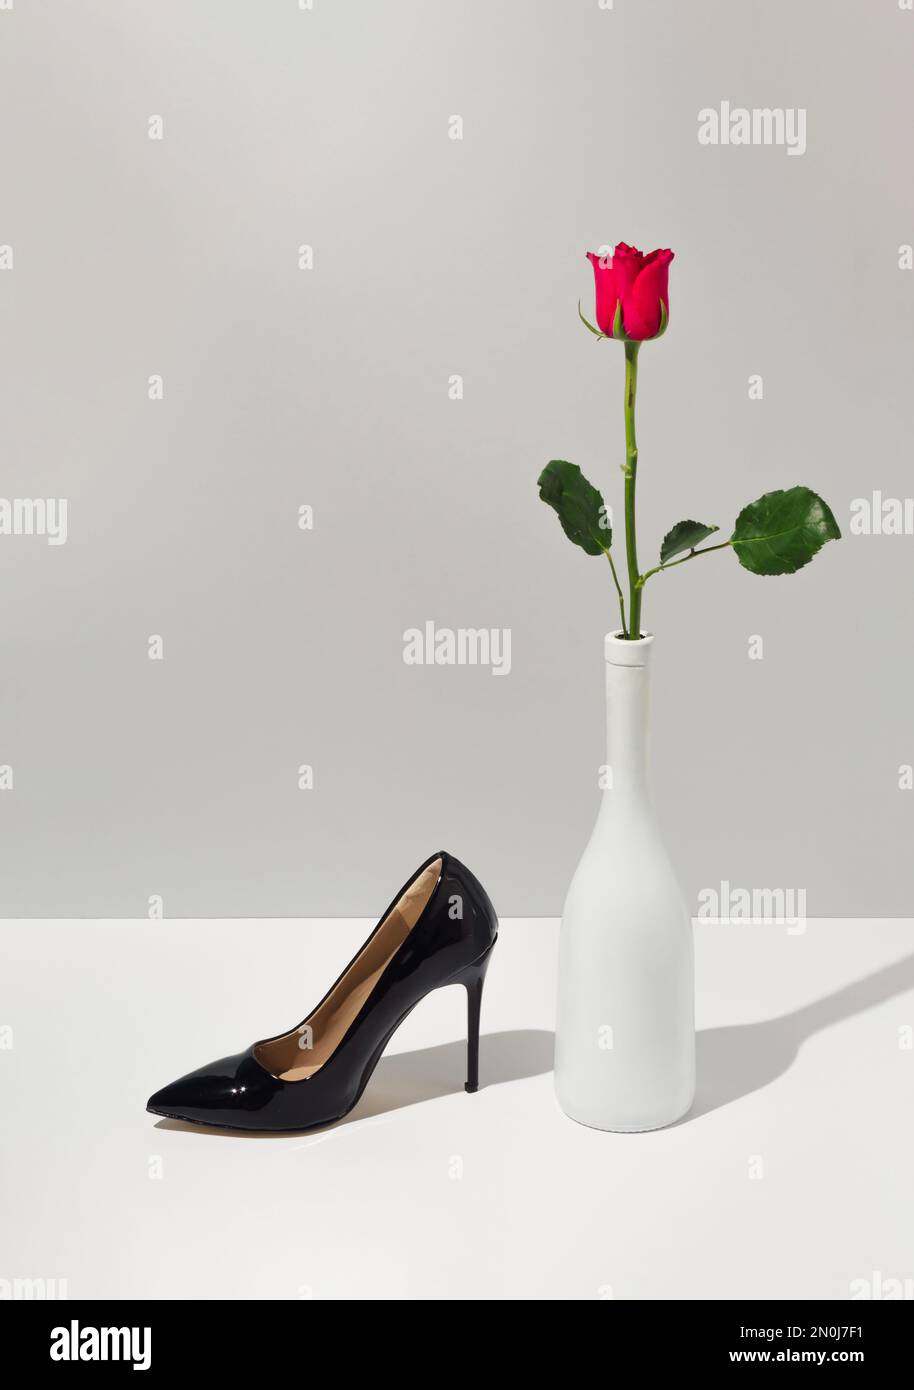 Kreatives Konzept mit Rosenblume, Champagnerflasche und schwarzem Damenschuh. Nachhaltige Modeidee mit weißem und grauem Hintergrund. Minimaler Valentinstag Stockfoto